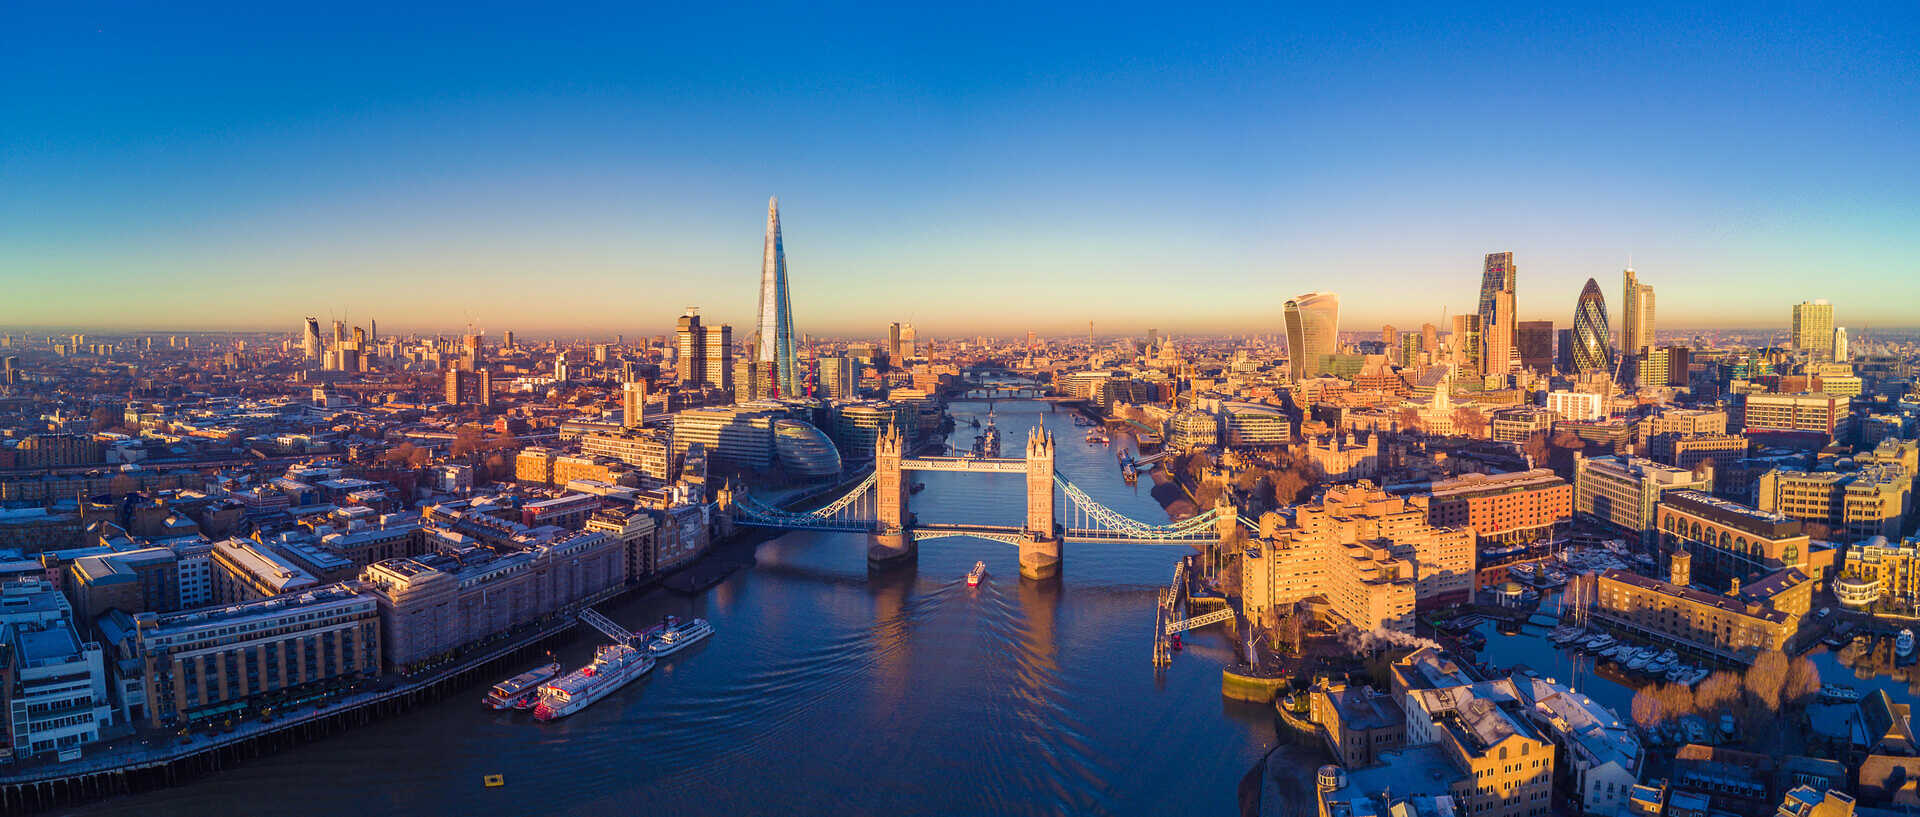 Vue panoramique aérienne sur la ville de Londres et de la Tamise, Angleterre, Royaume-Uni